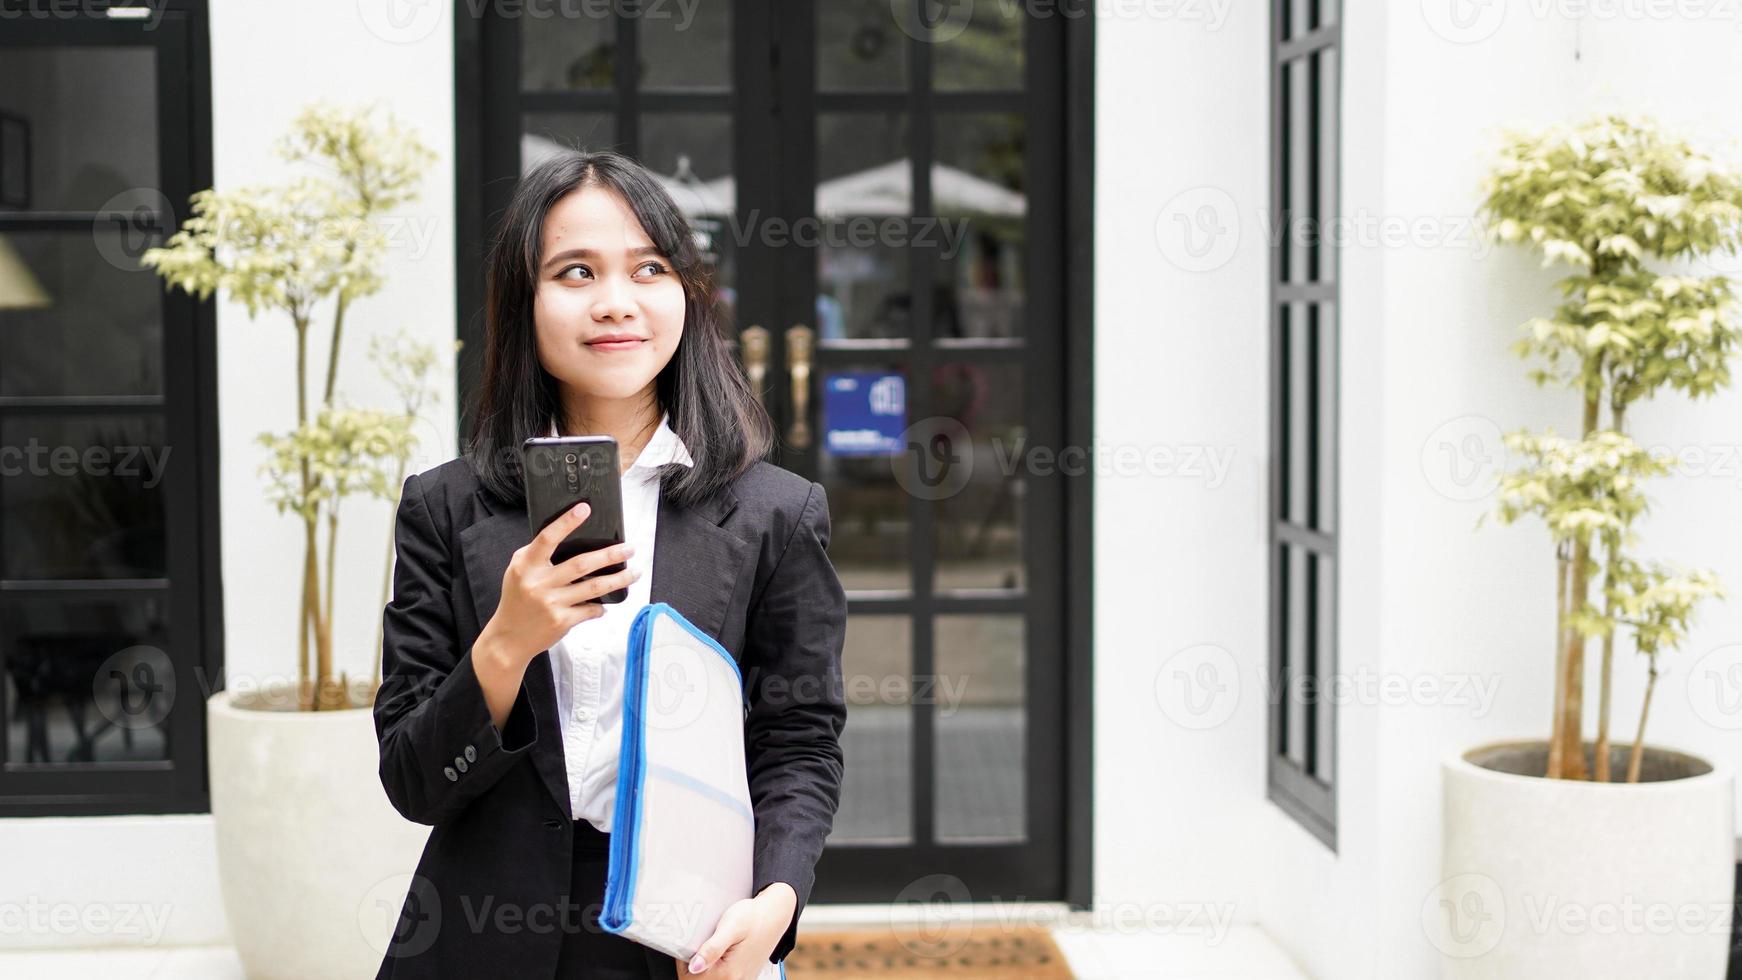 Schöne junge asiatische Geschäftsfrau im Anzug, die im Café mit Telefon und braunem Umschlag steht foto